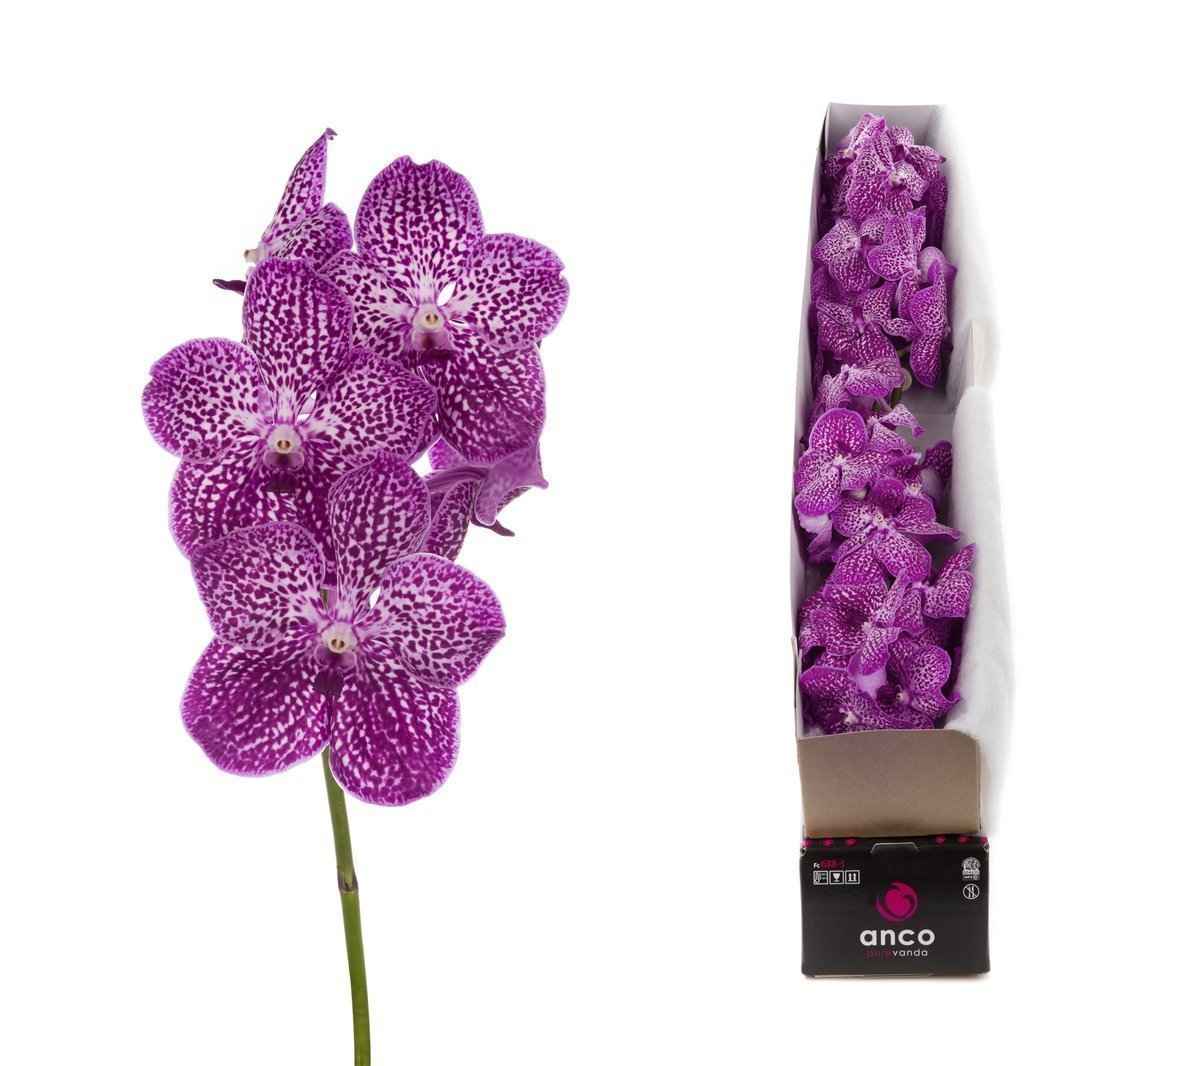 Срезанные цветы оптом Vanda sunanda lipstick per stem от 8шт. из Голландии с доставкой по России